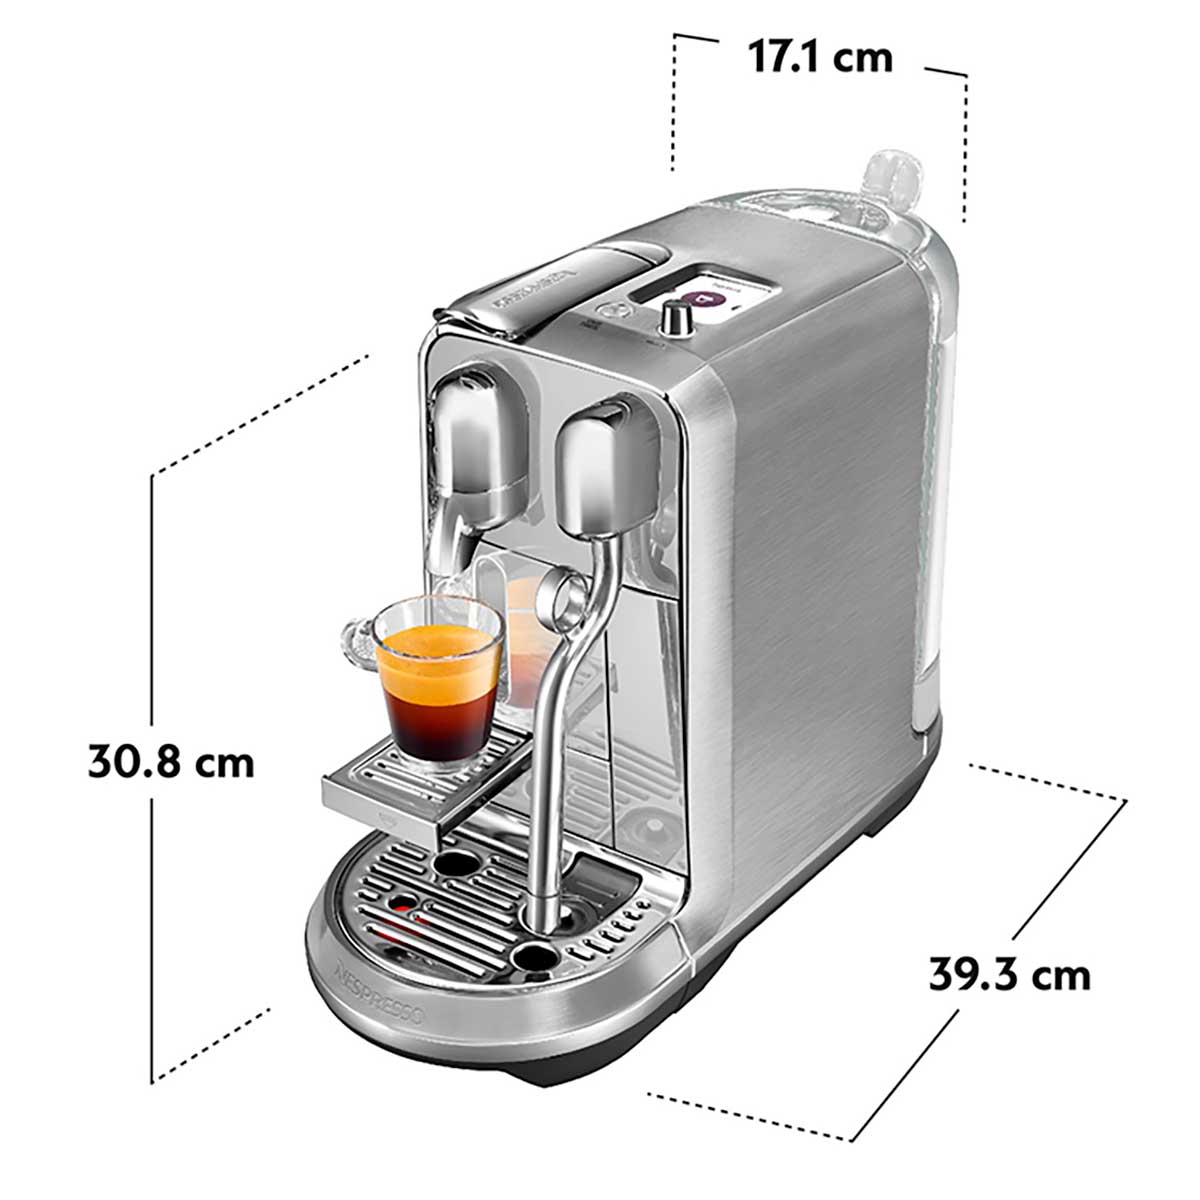 cafeteira-eletrica-nespresso-creatista-metalica-110v-7.jpg